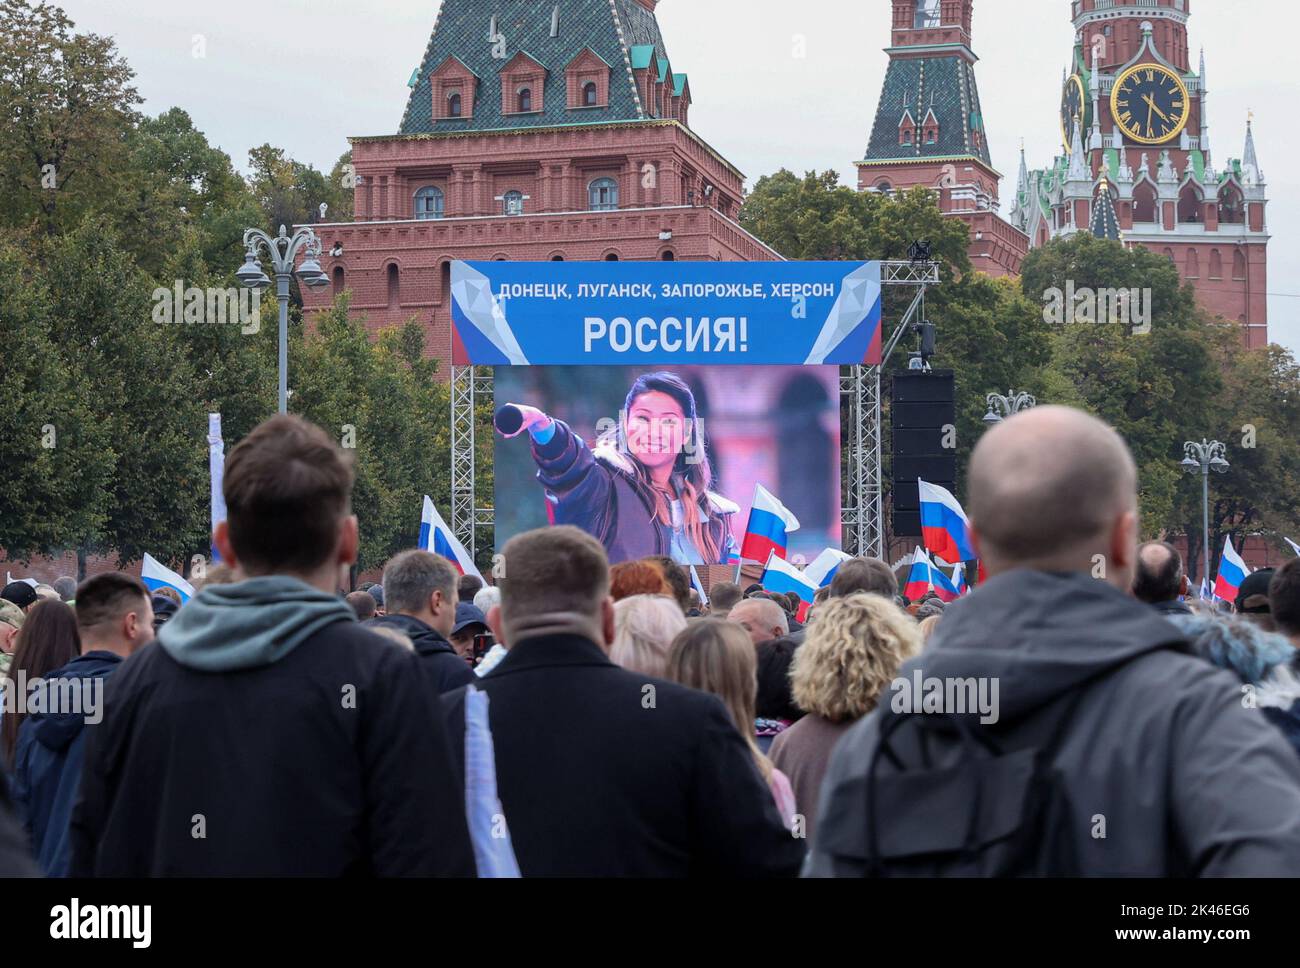 Les gens assistent à un concert marquant l'annexion déclarée des territoires sous contrôle russe de quatre régions ukrainiennes de Donetsk, Luhansk, Kherson et Zaporizhzhia, après avoir tenu ce que les autorités russes ont appelé des référendums dans les zones occupées de l'Ukraine qui ont été condamnés par Kiev et les gouvernements du monde entier, près du mur du Kremlin dans le centre de Moscou, en Russie, 30 septembre 2022. Un slogan à l'écran se lit comme suit : 'Donetsk, Luhansk, Zaporizhzhia, Kherson - Russia!' PHOTOGRAPHE REUTERS/REUTERS Banque D'Images